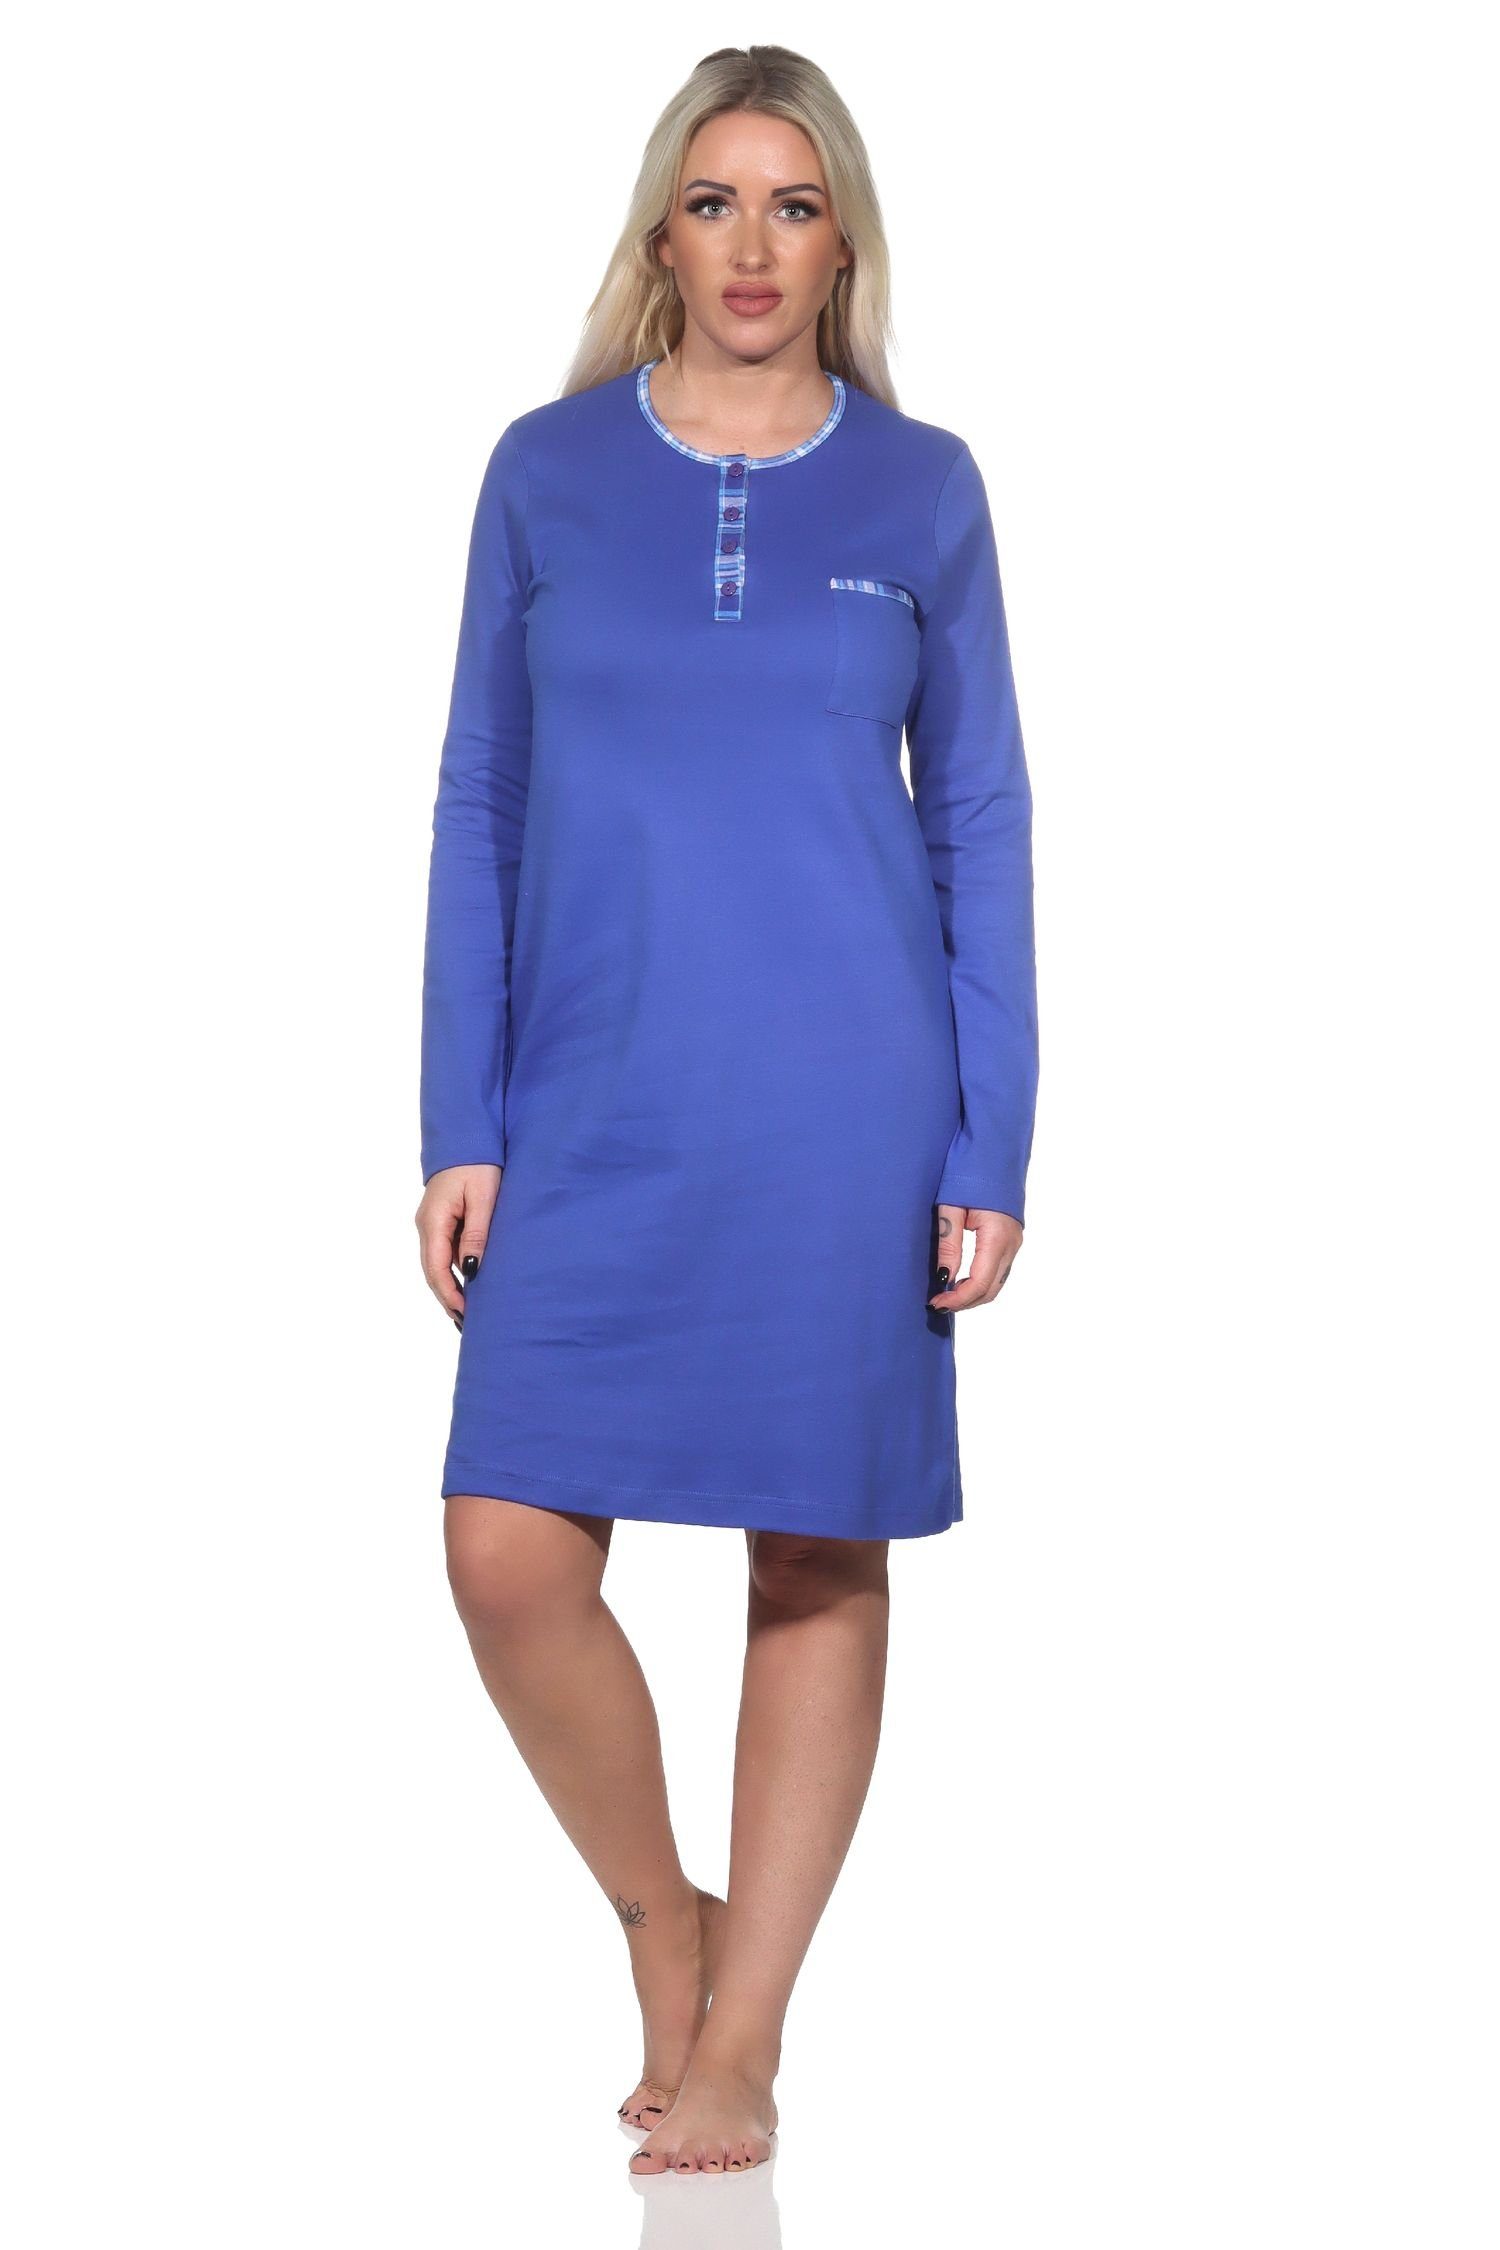 Kuschel langarm Nachthemd Normann in Nachthemd Qualität blau Interlock Normann Damen